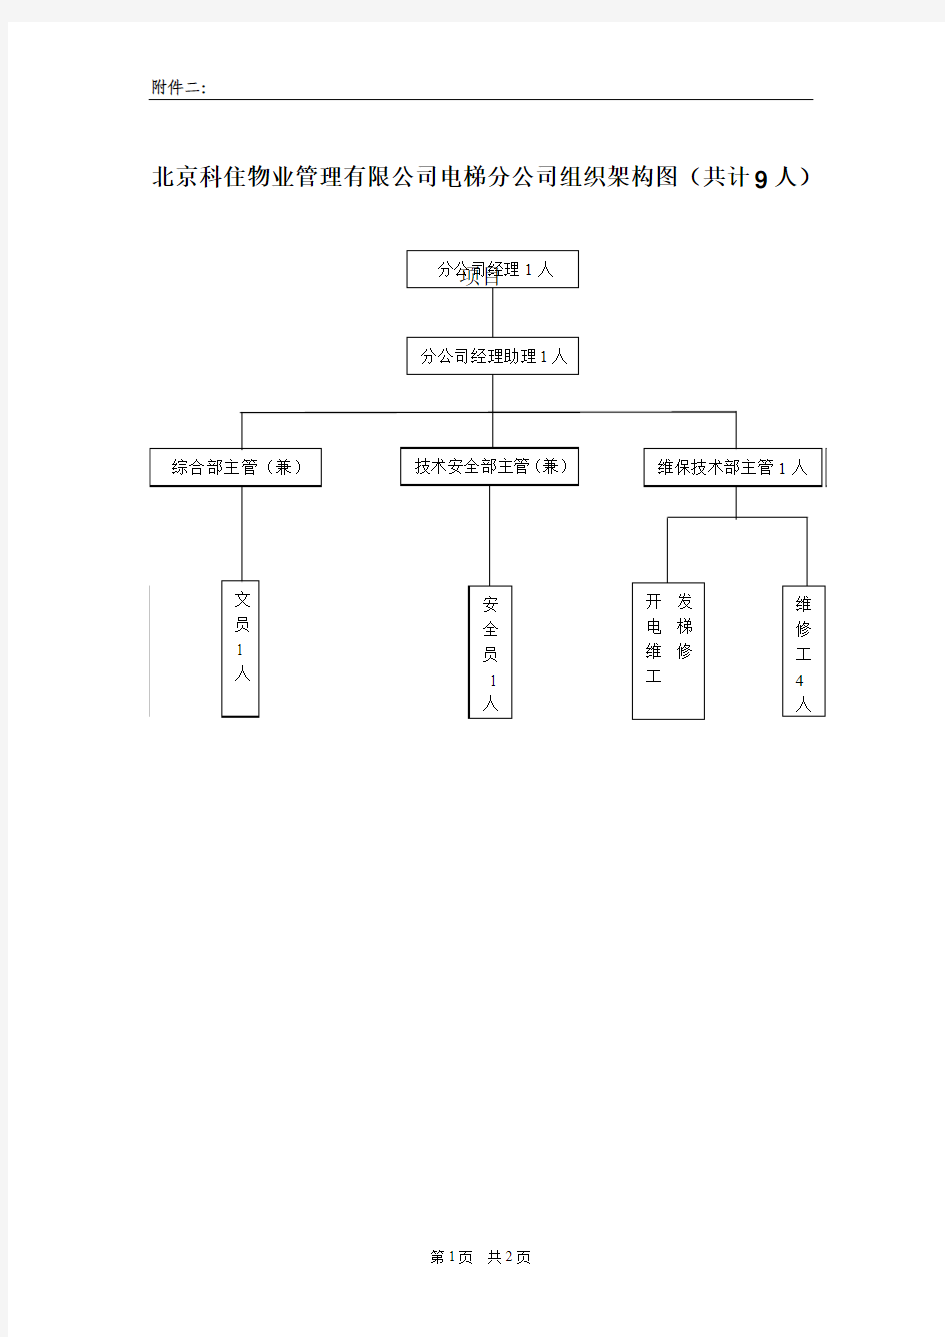 电梯分公司2011组织架构图